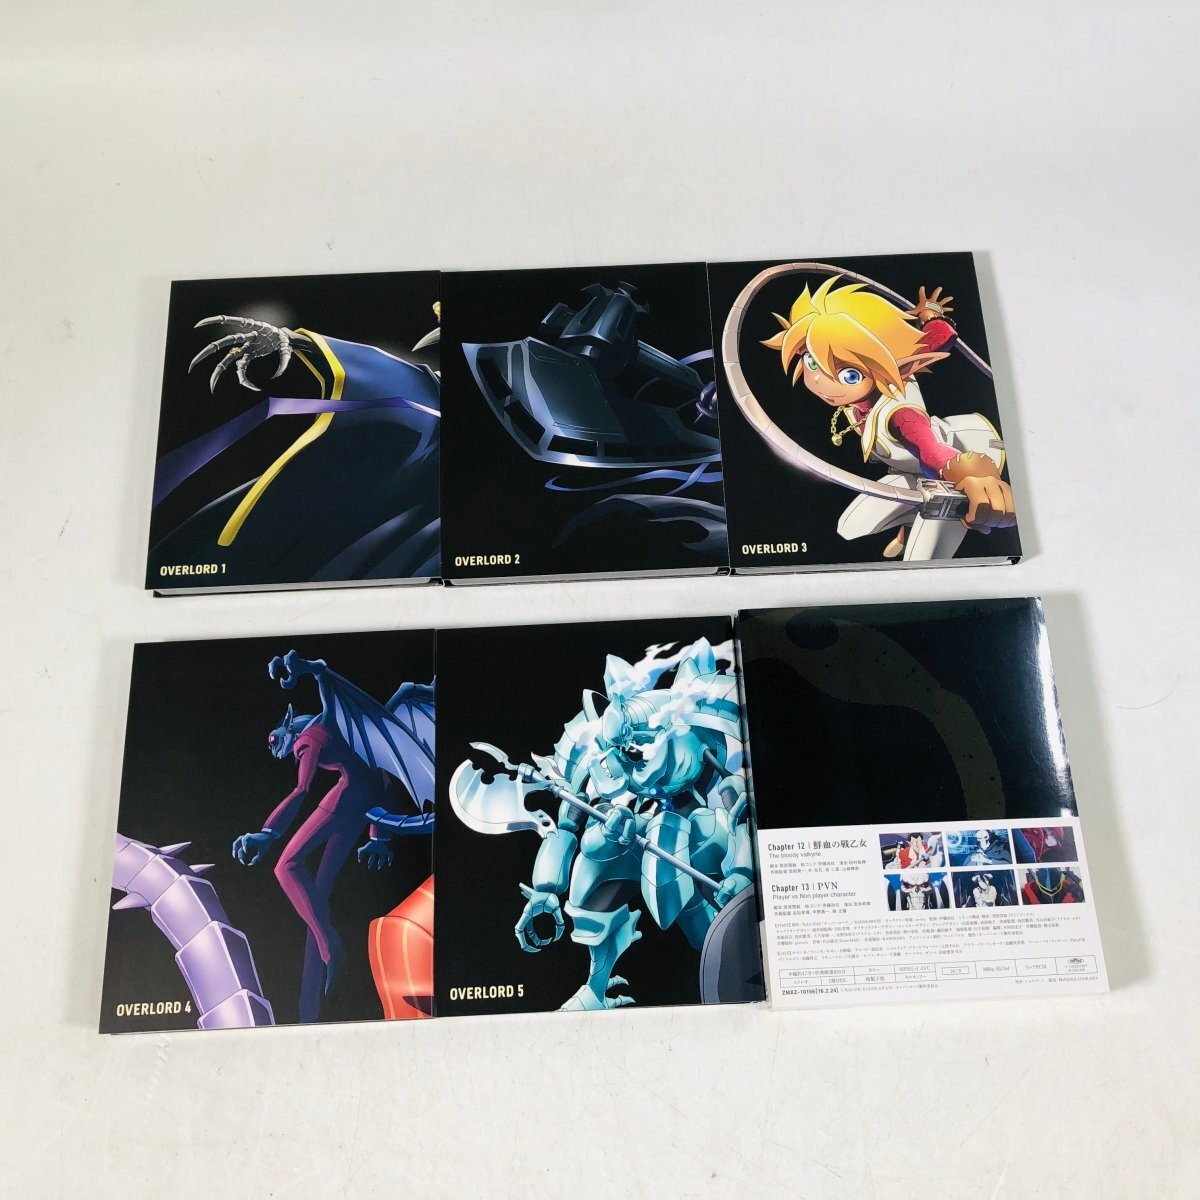 中古 Blu-ray オーバーロード 1期 初回限定版 1~6巻 セット BOX付きの画像3